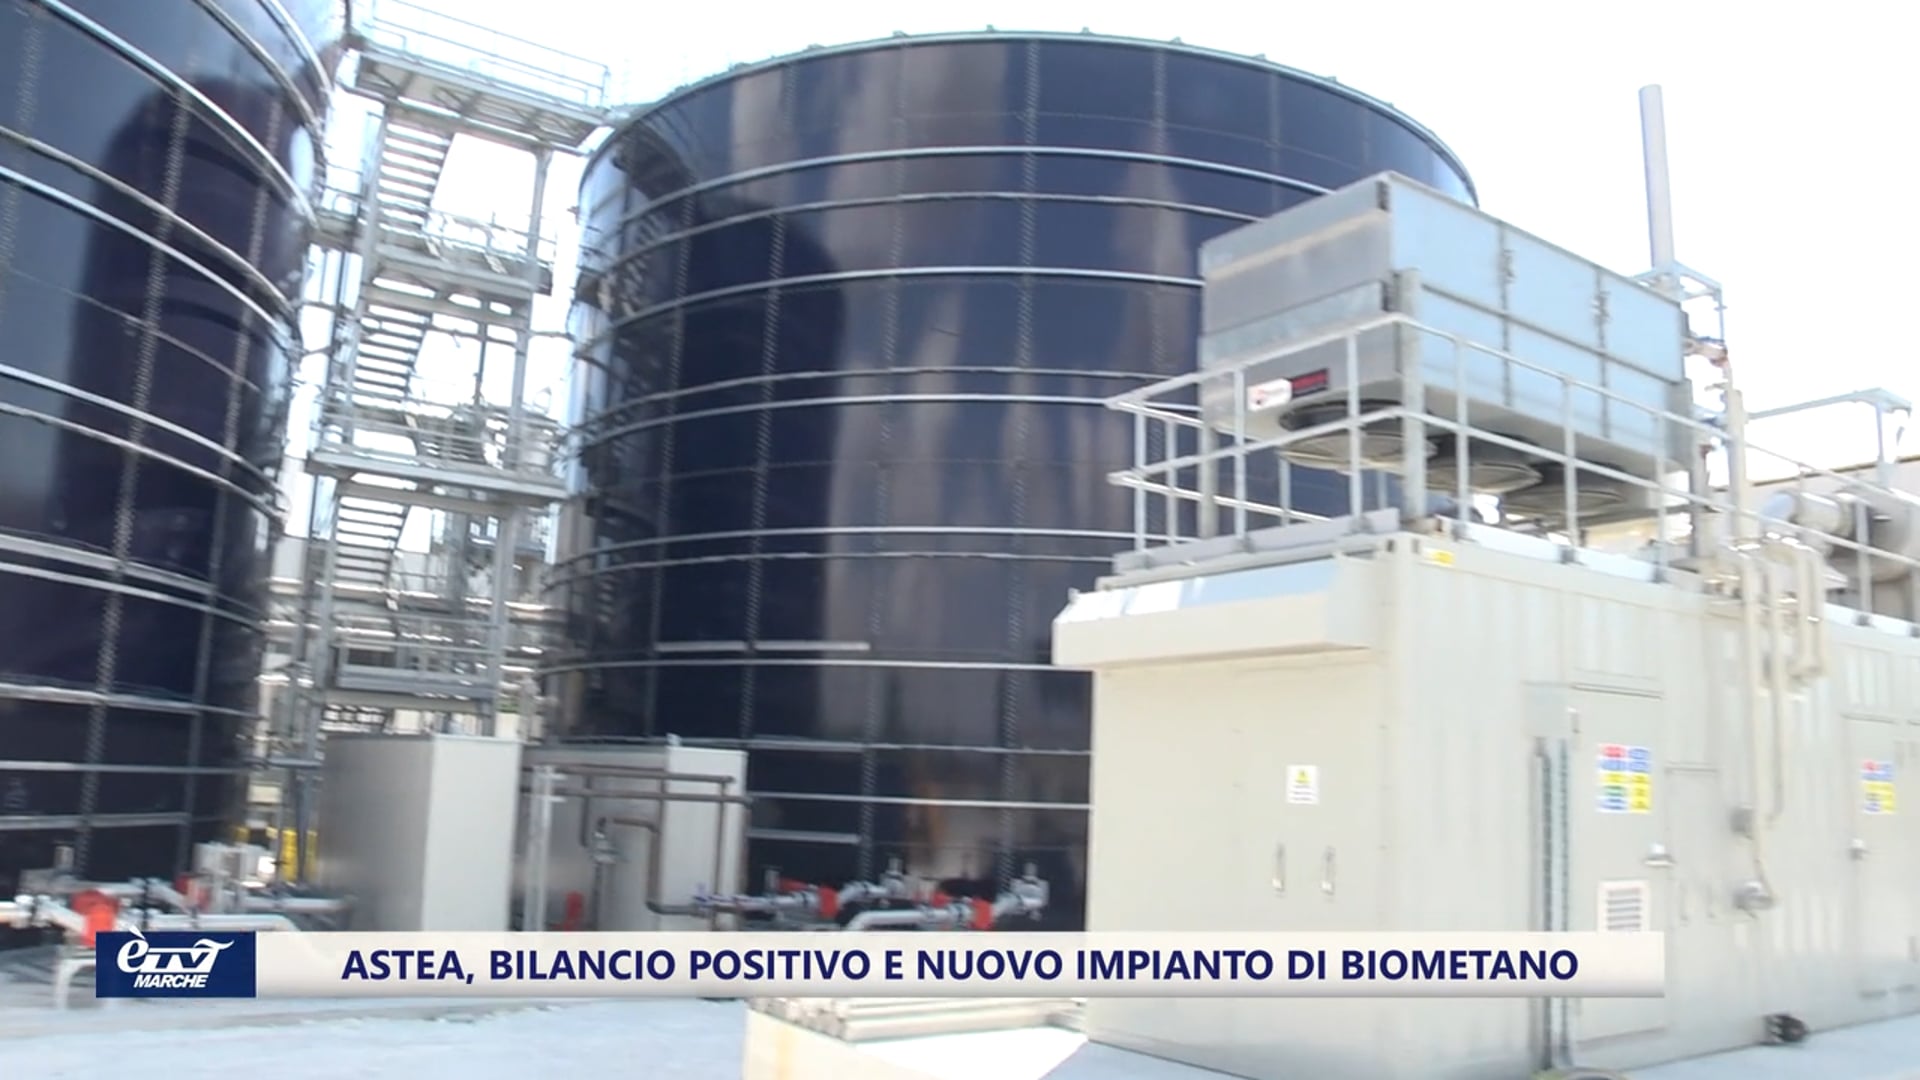 La nuova frontiera con l'impianto a biometano ad Ostra, bilancio positivo per Gruppo Astea - VIDEO 